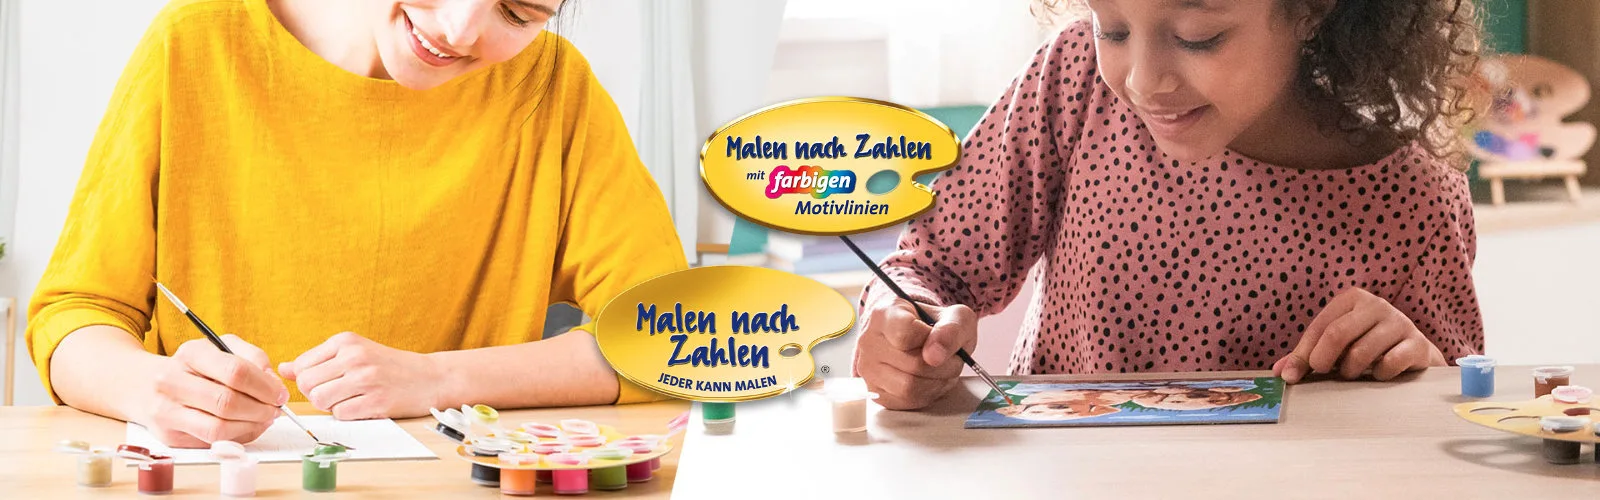 Ravensburger Malen nach Zahlen bei Spielzeugwelten.de